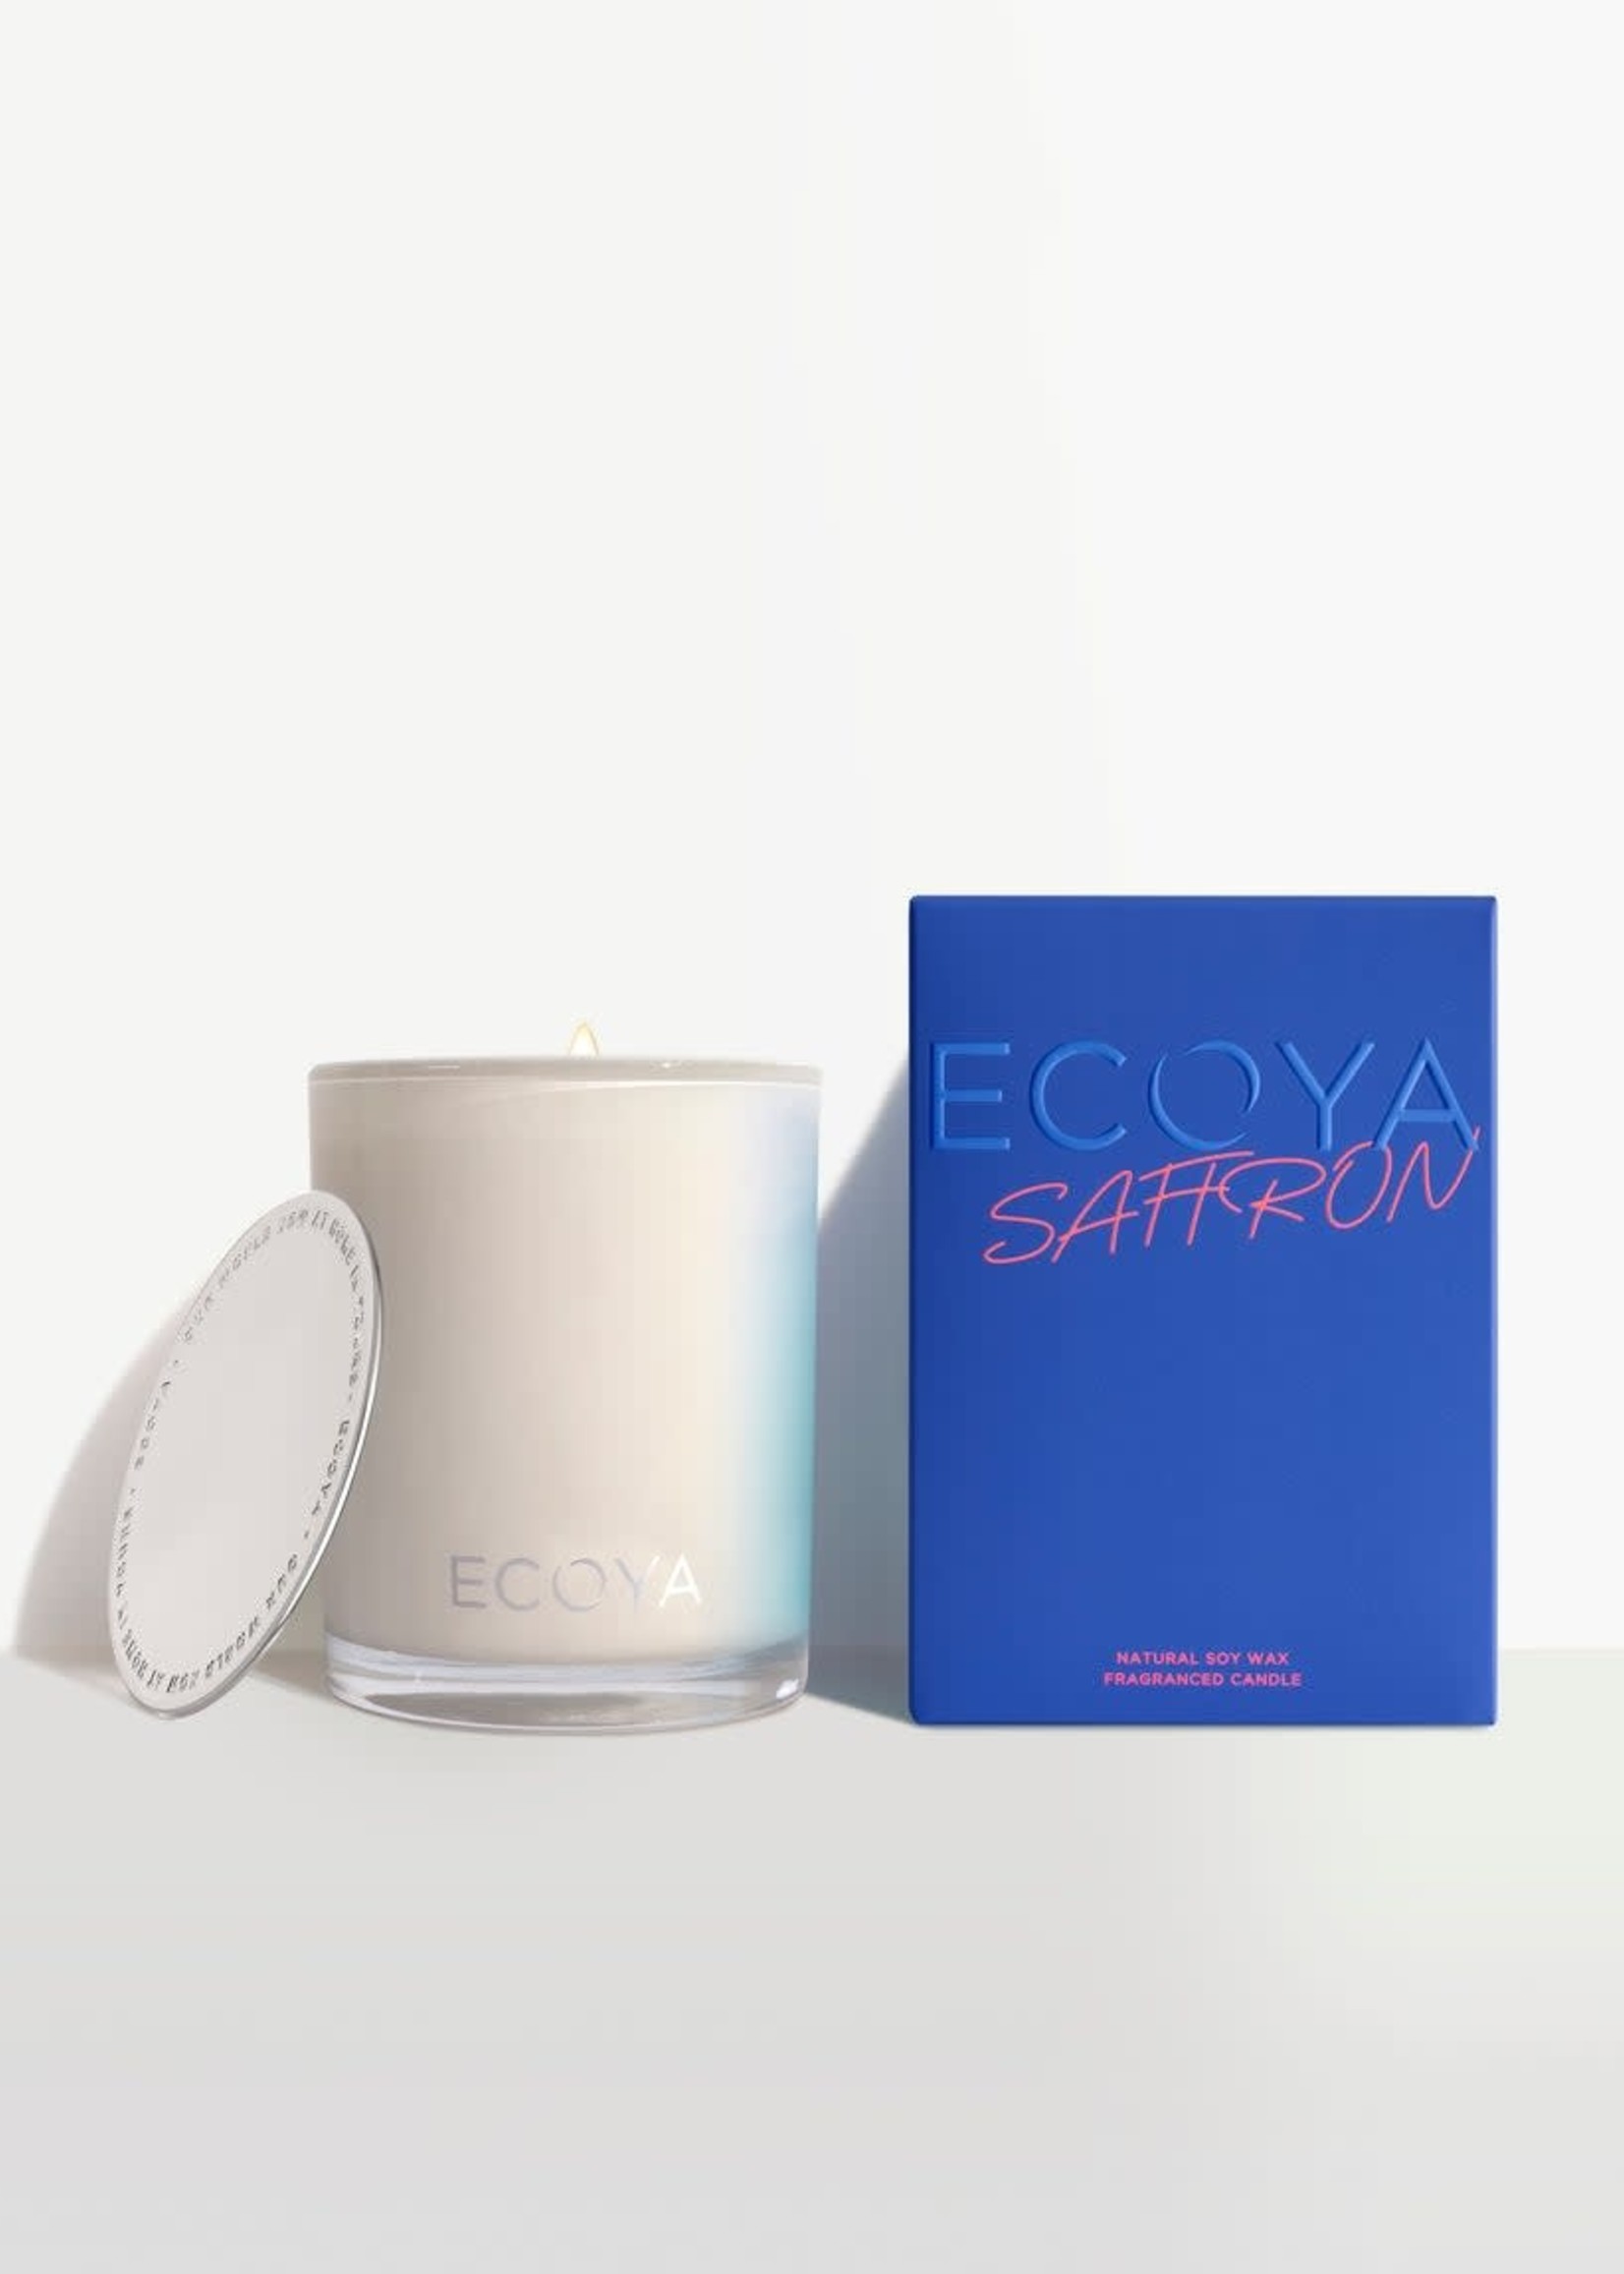 Ecoya Limited edition Saffron Madison Candle